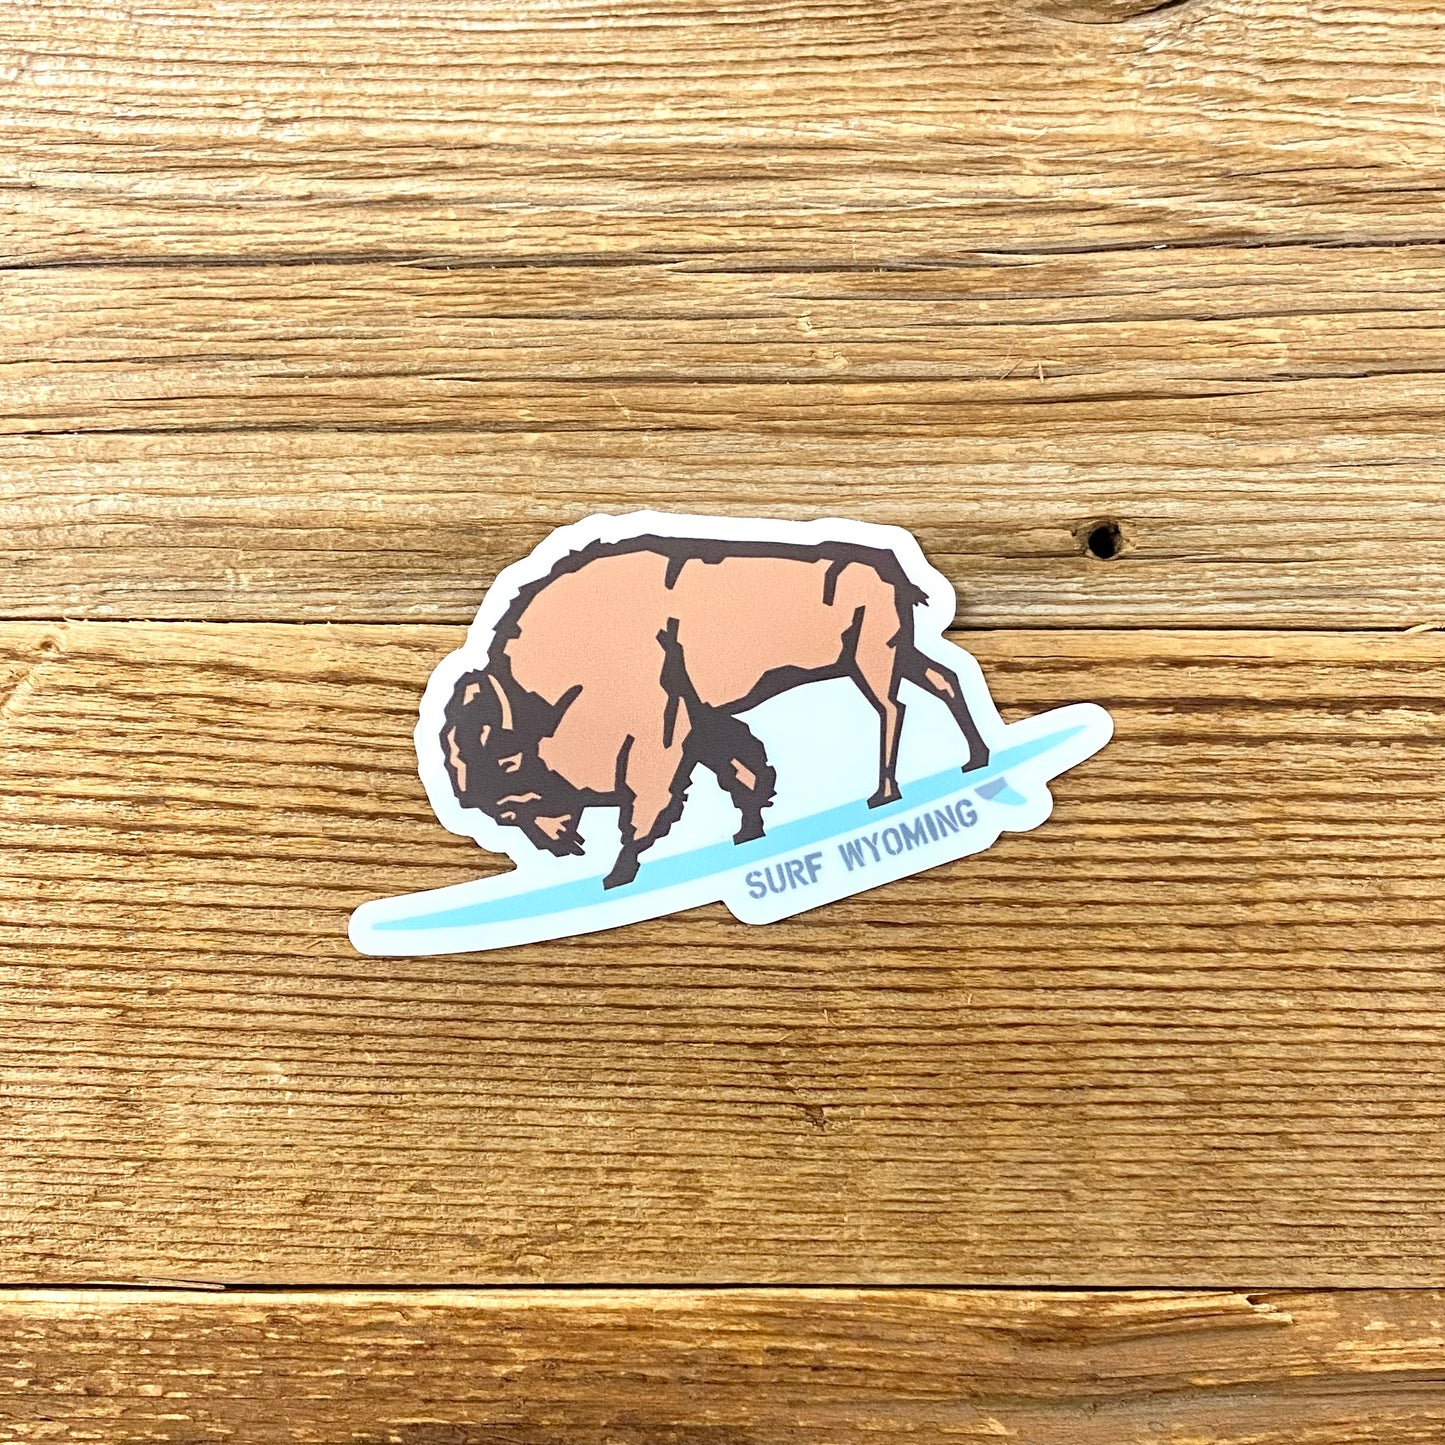 Surf Wyoming® Bison Glassy Sticker